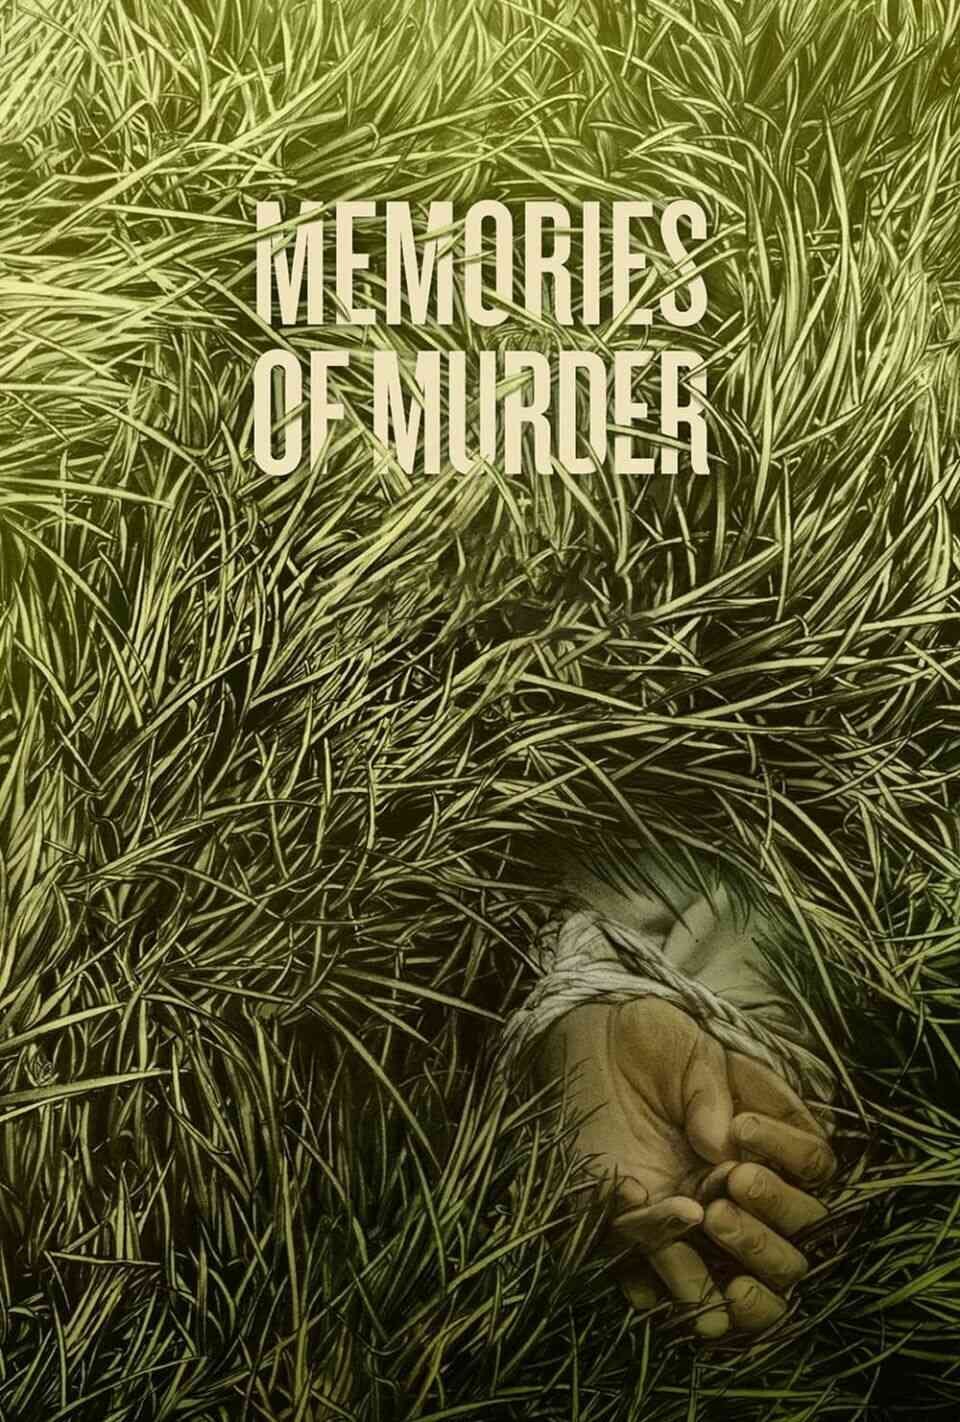 Read Memories of Murder screenplay.